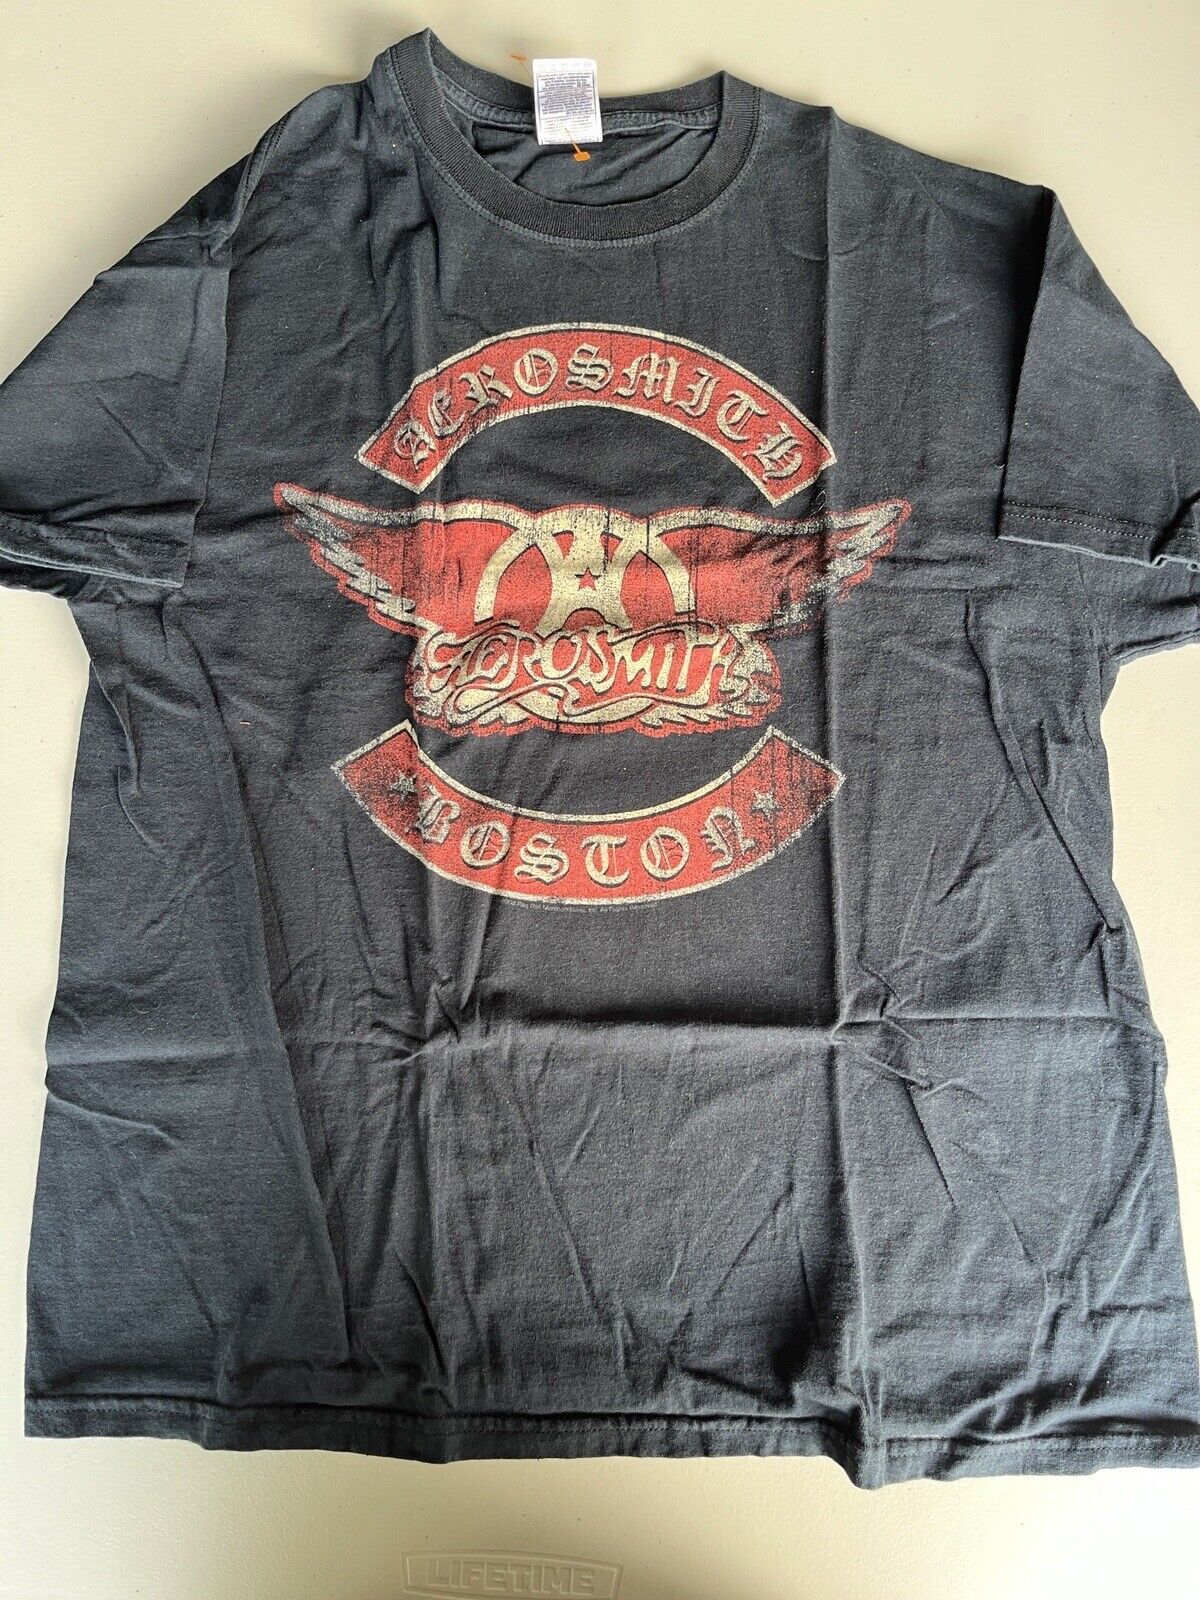 2008 Aerosmith Boston Vintage Shirt Size Large T-Shirt Short Sleeve